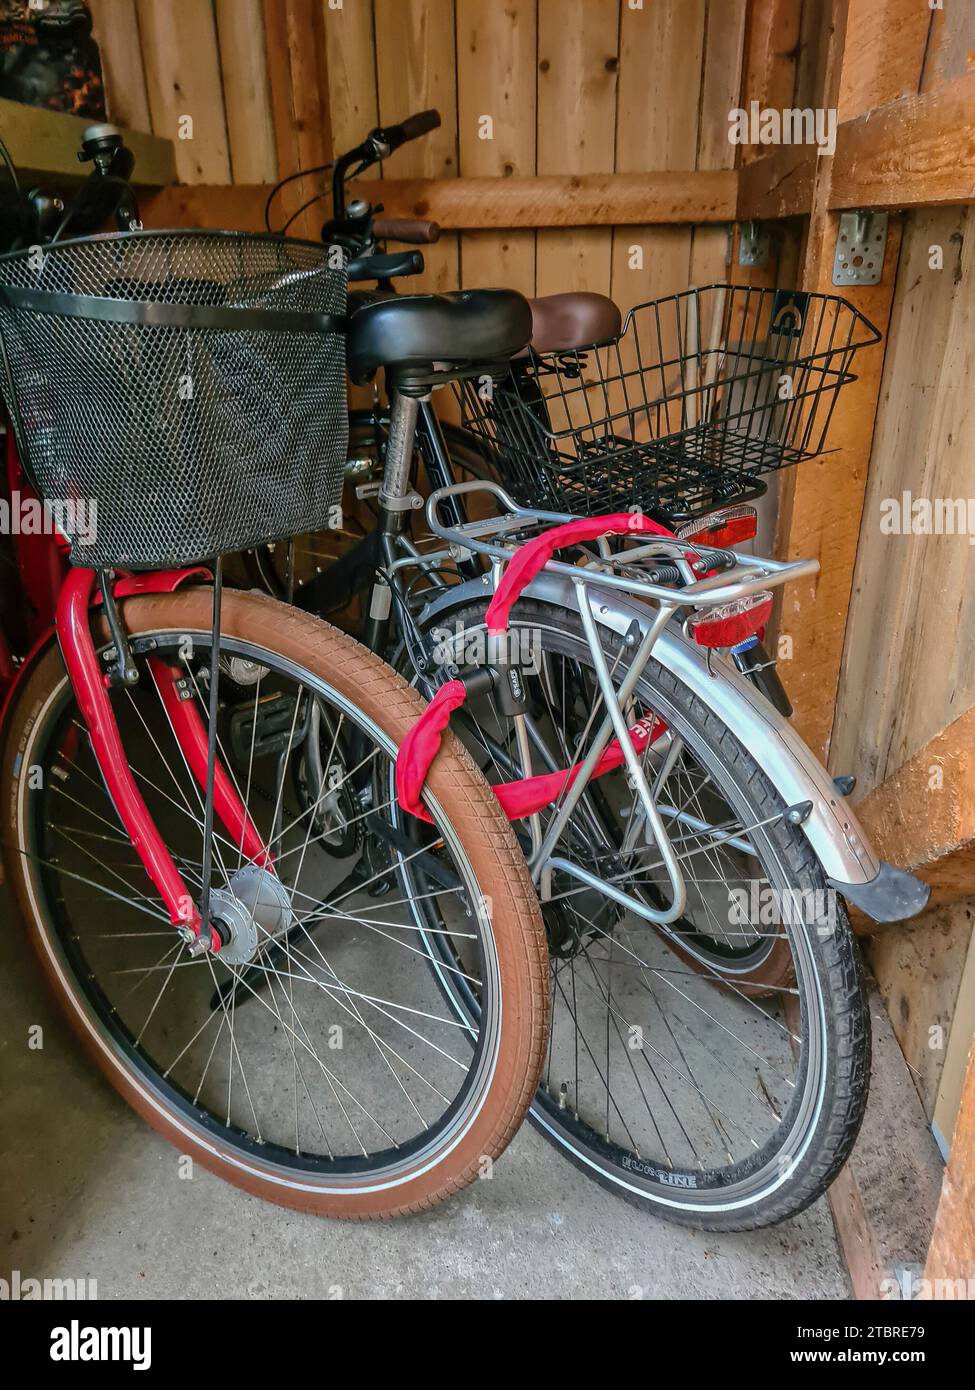 Biciclette custodite con una serratura per biciclette una accanto all'altra in un garage di legno nella località di Prerow, nella penisola di Fischland-Darß-Zingst, Meclemburgo-Pomerania occidentale, Germania Foto Stock